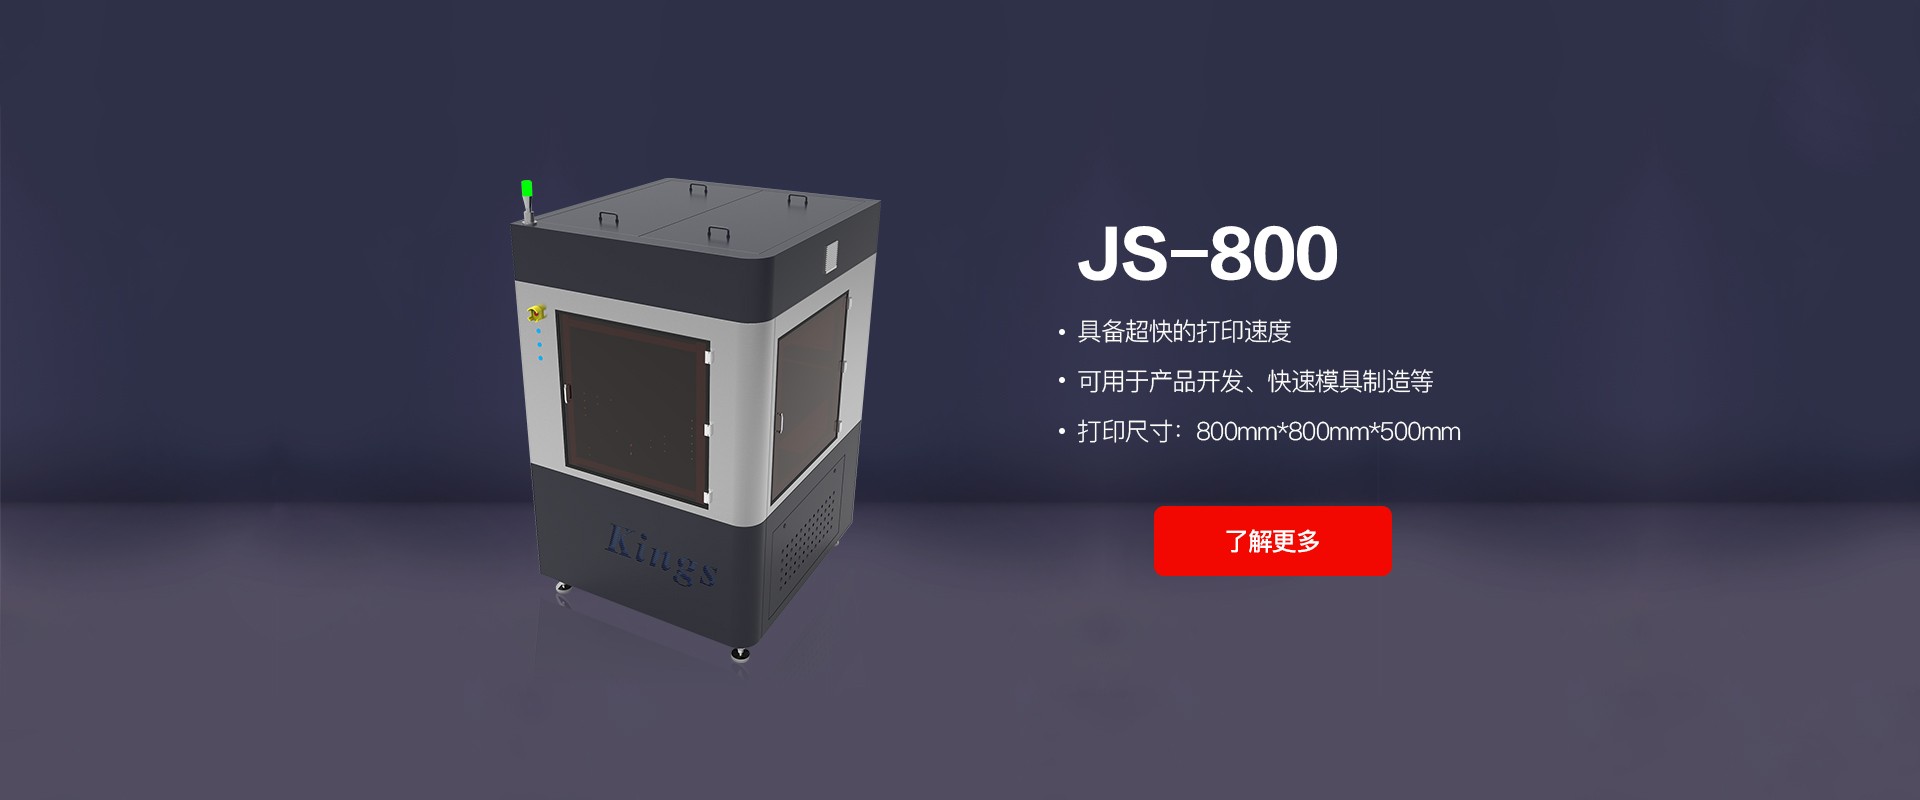 JS-800